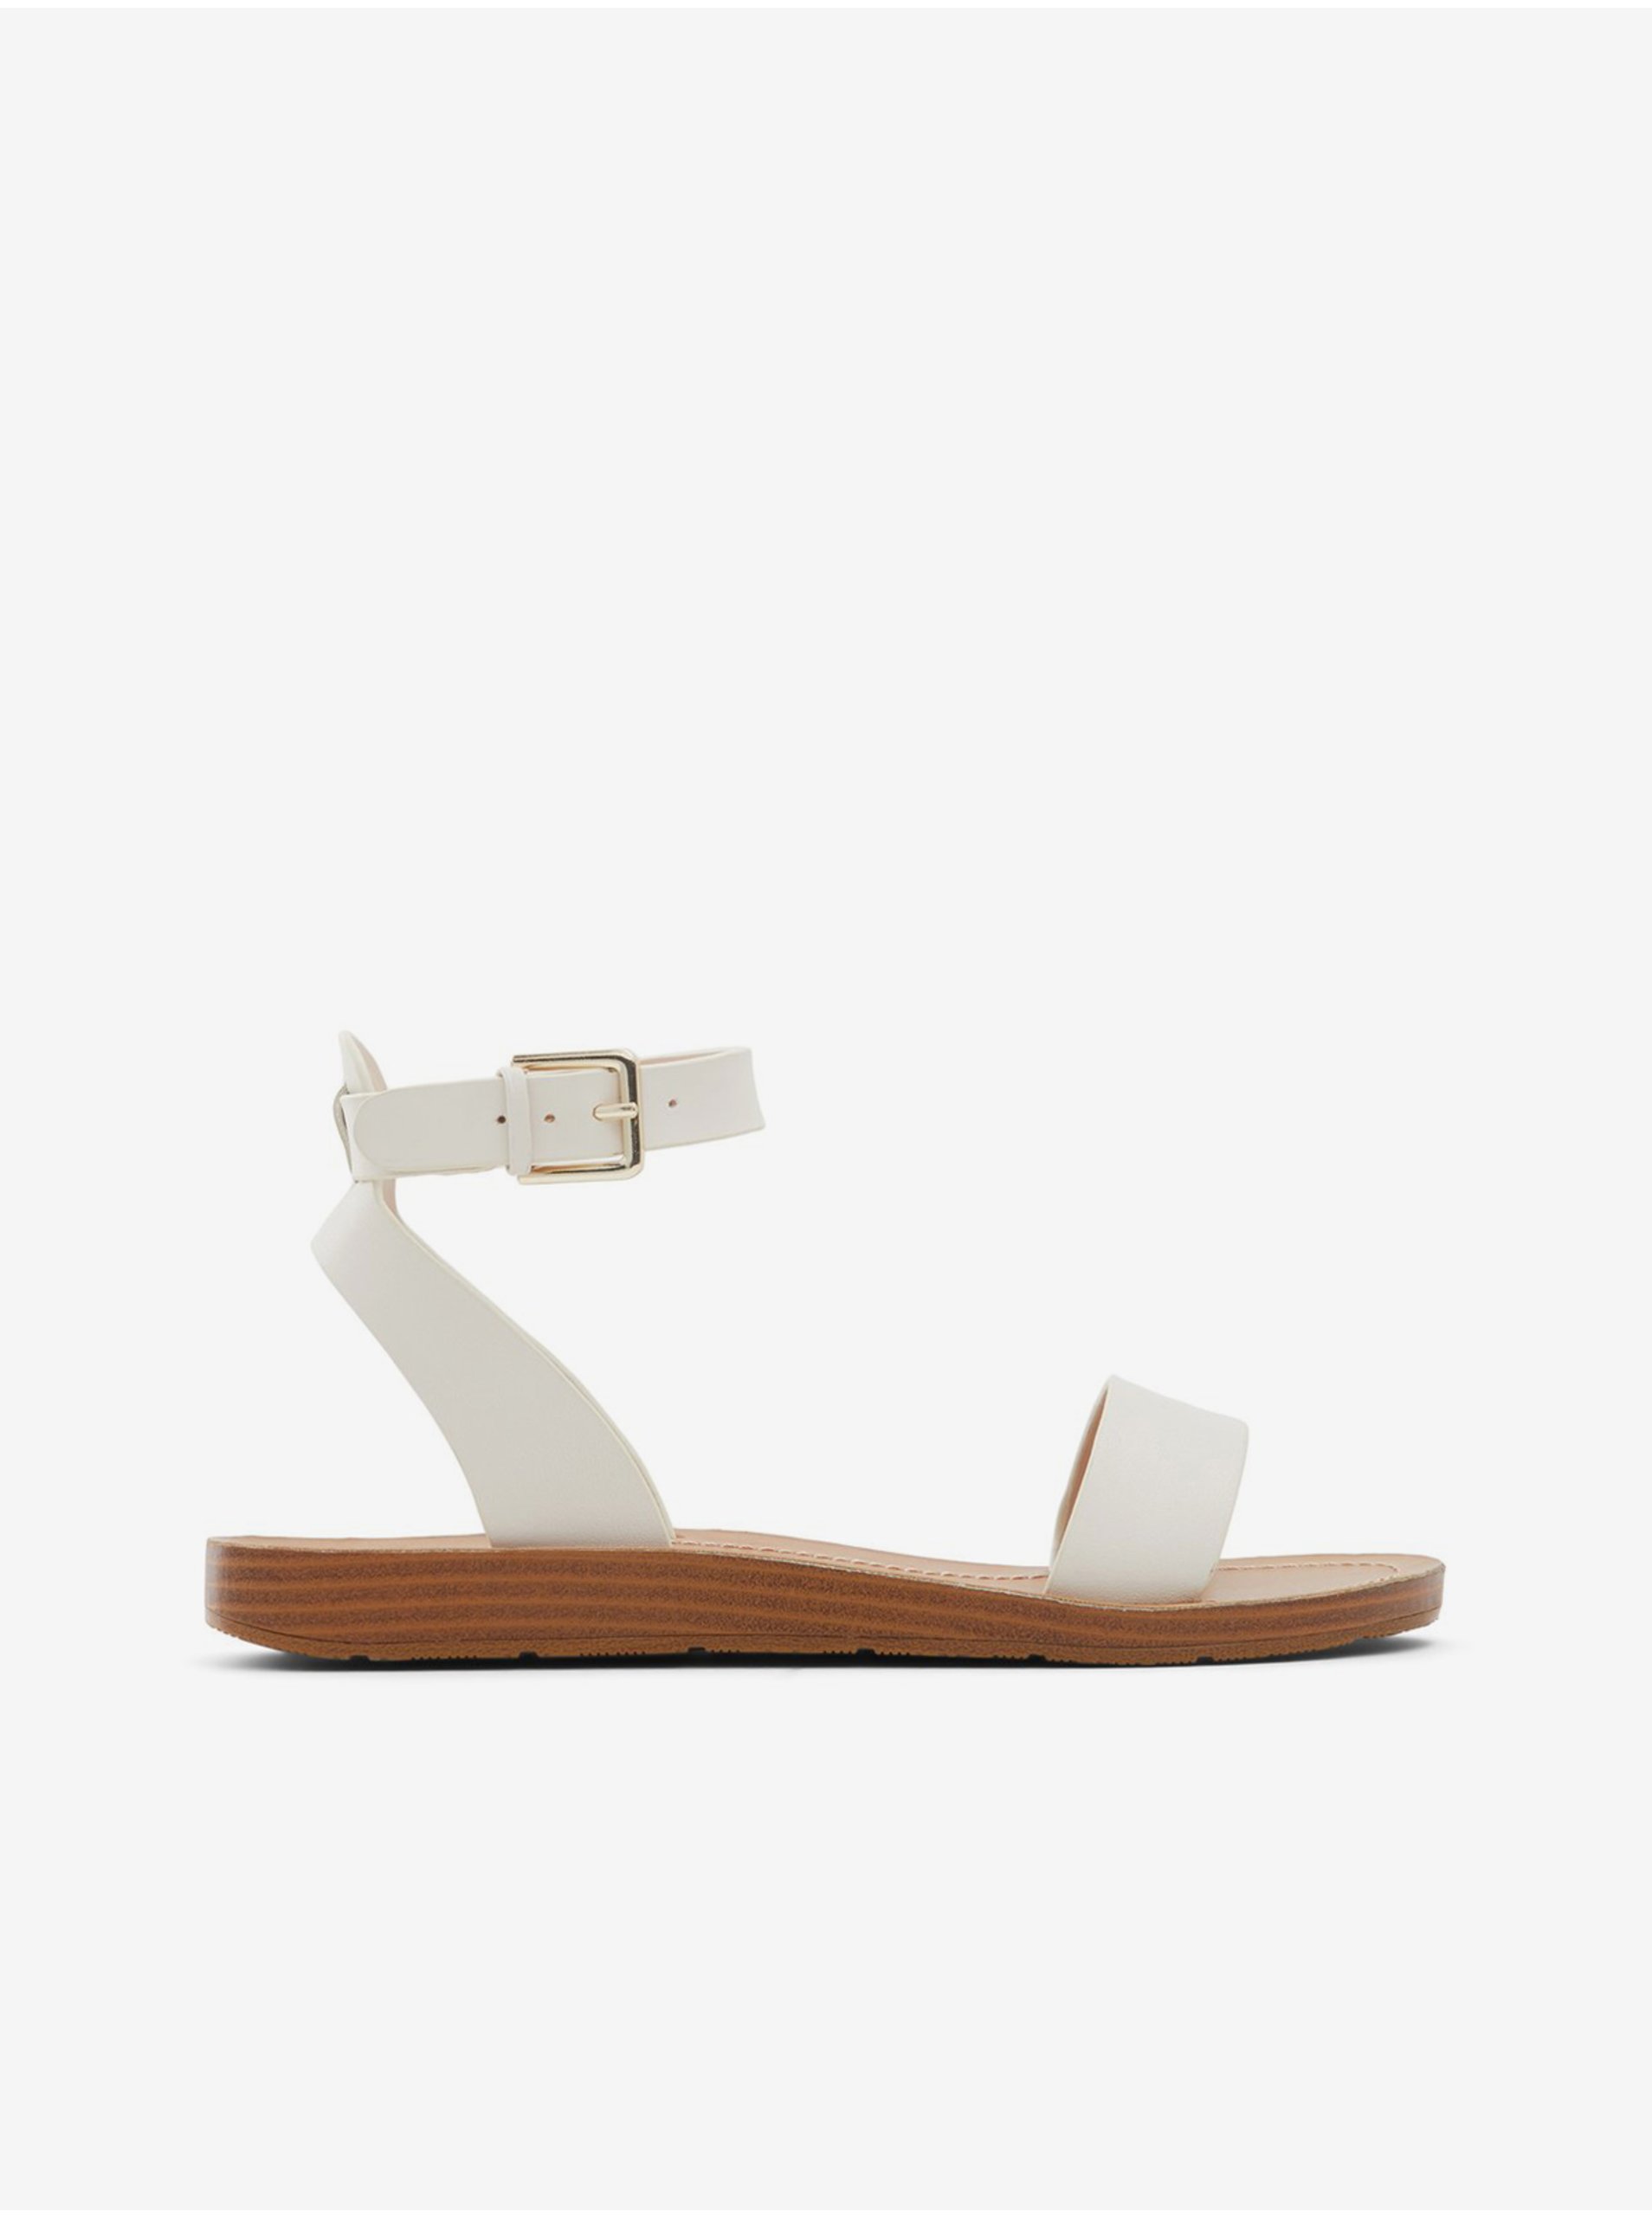 Lacno Biele dámske kožené sandále ALDO Kedaredia